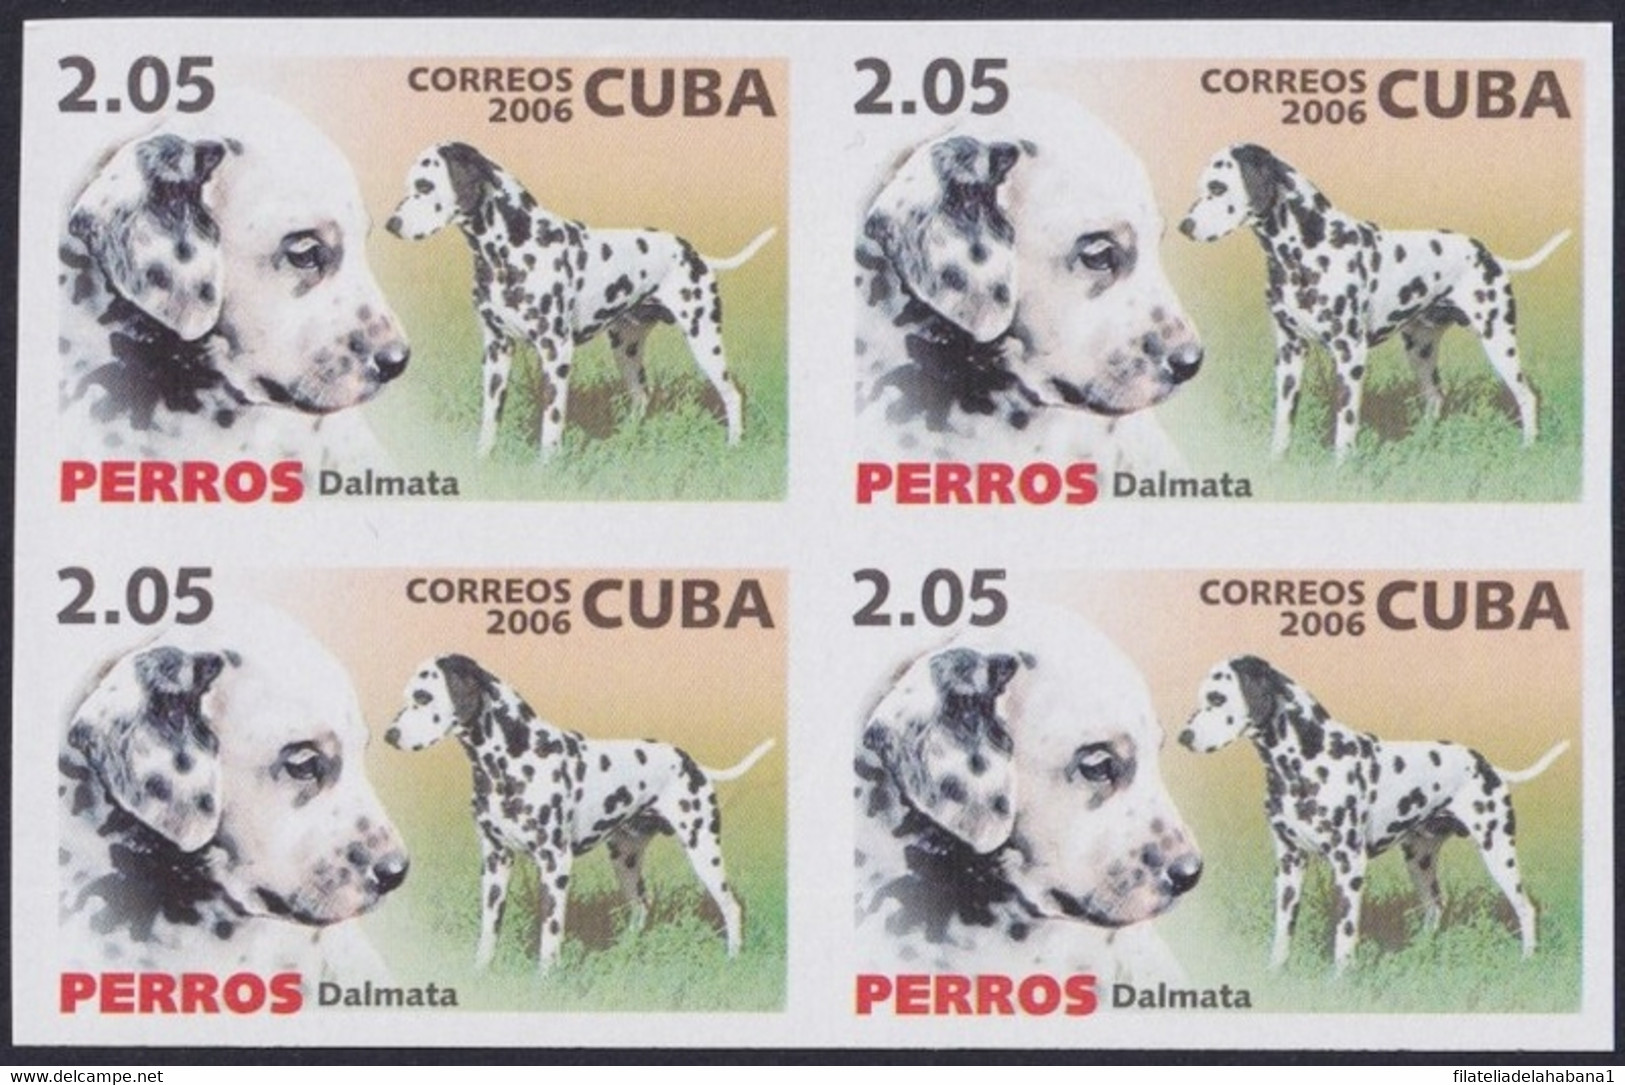 2006.737 CUBA 2006 2.05$ MNH IMPERFORATED PROOF PERROS DOG DALMATA. - Sin Dentar, Pruebas De Impresión Y Variedades